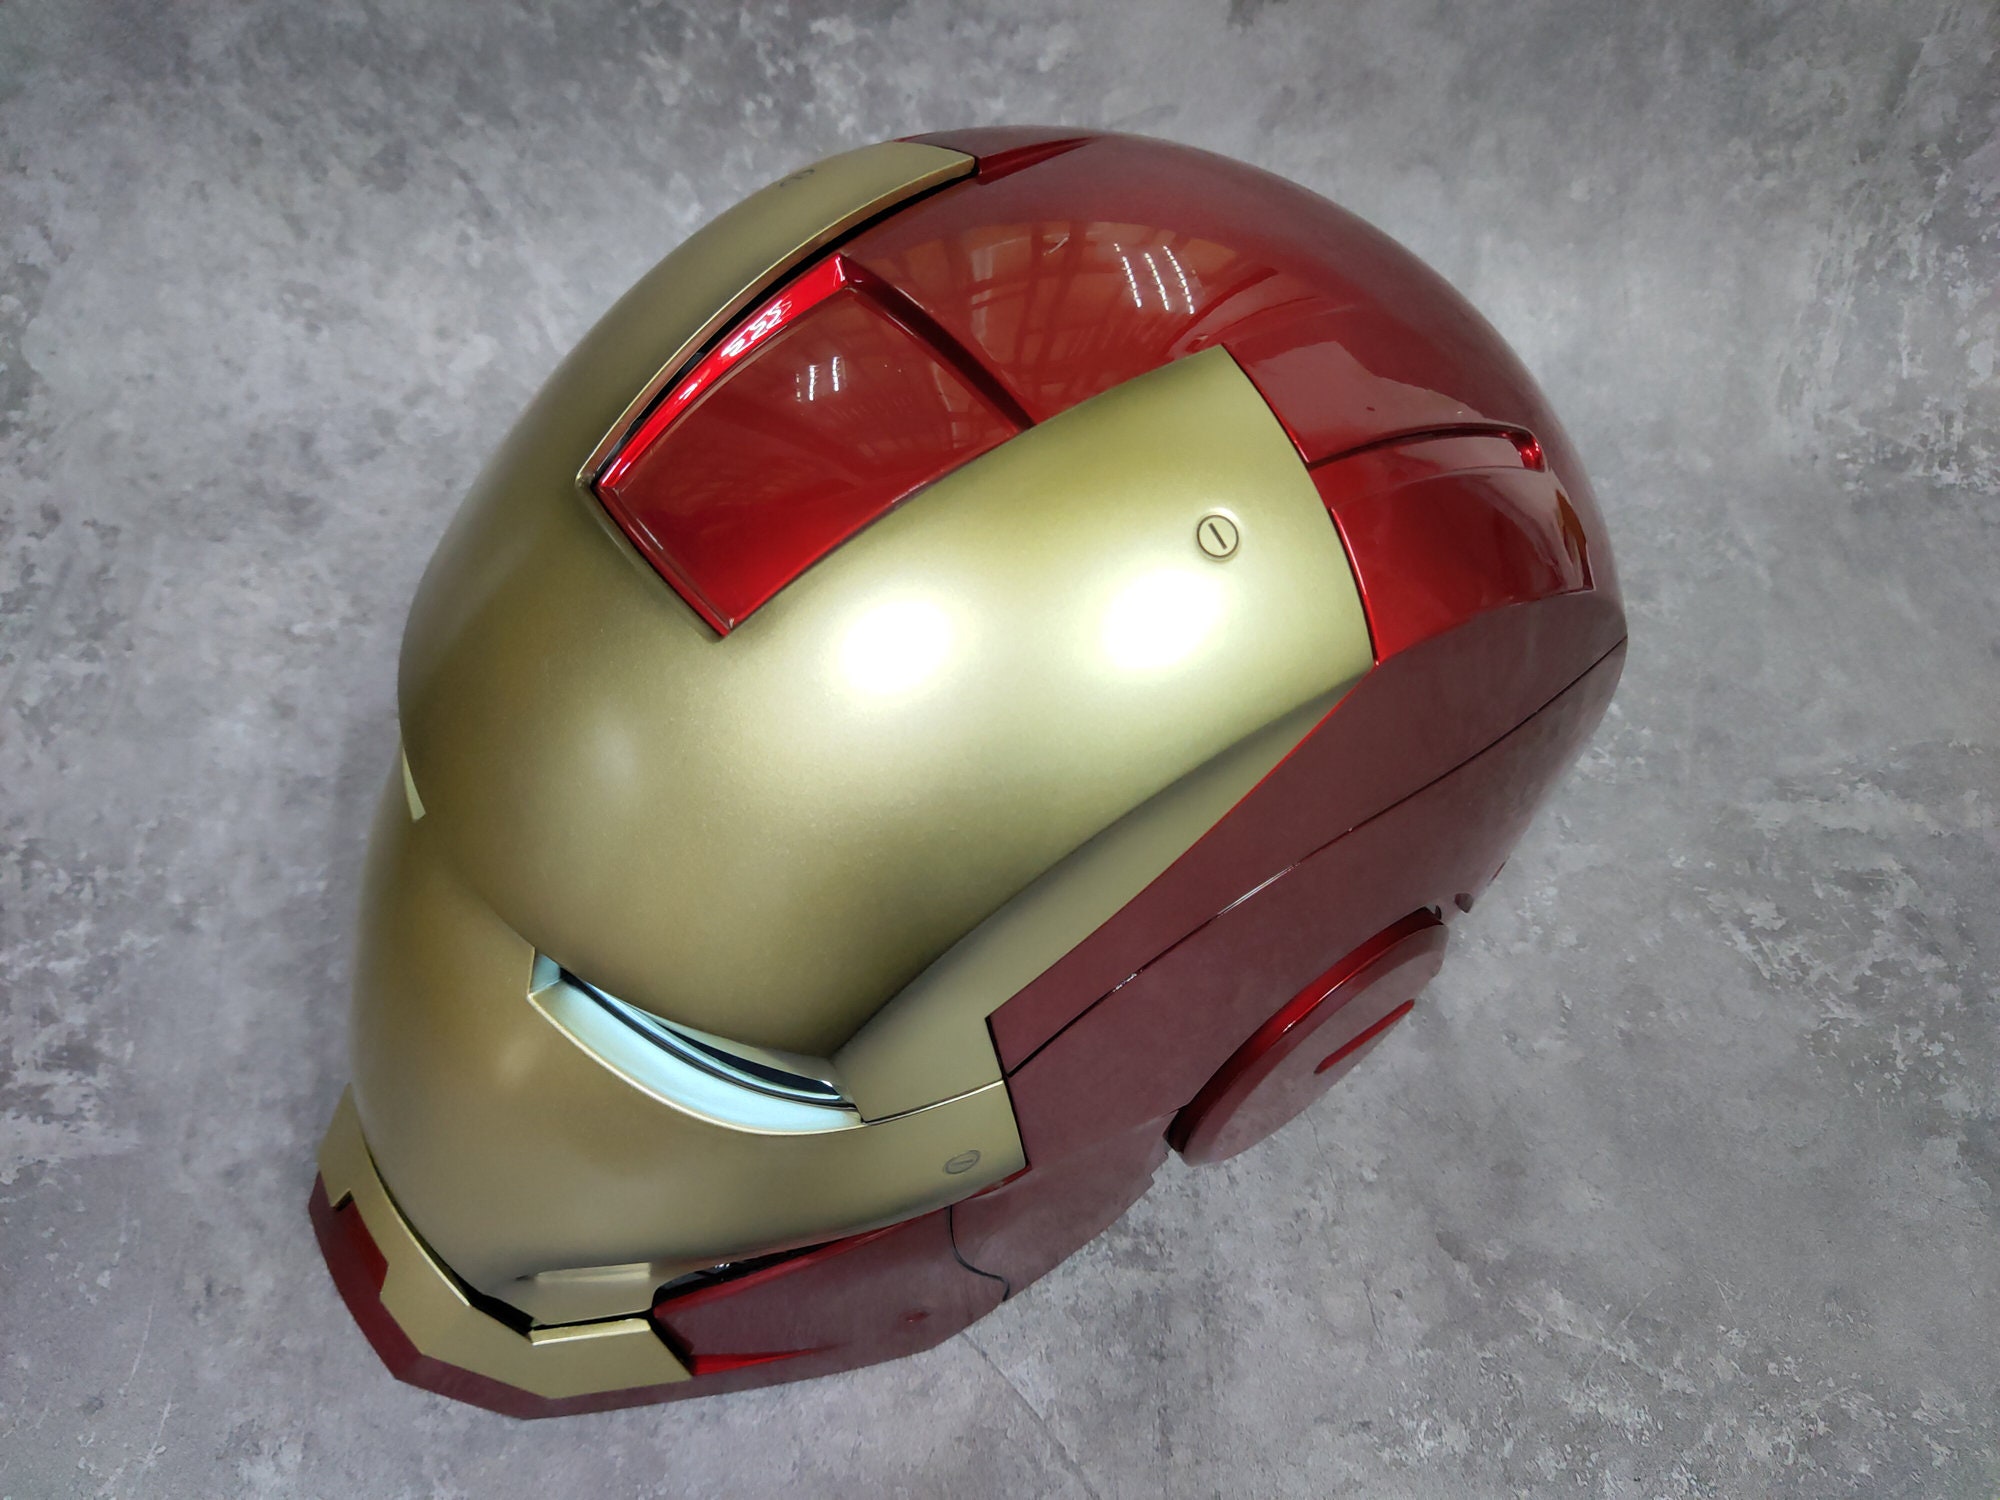 Iron Man Helmet Electronic Mark 7 Helmet 1:1 Life Size | Etsy Canada